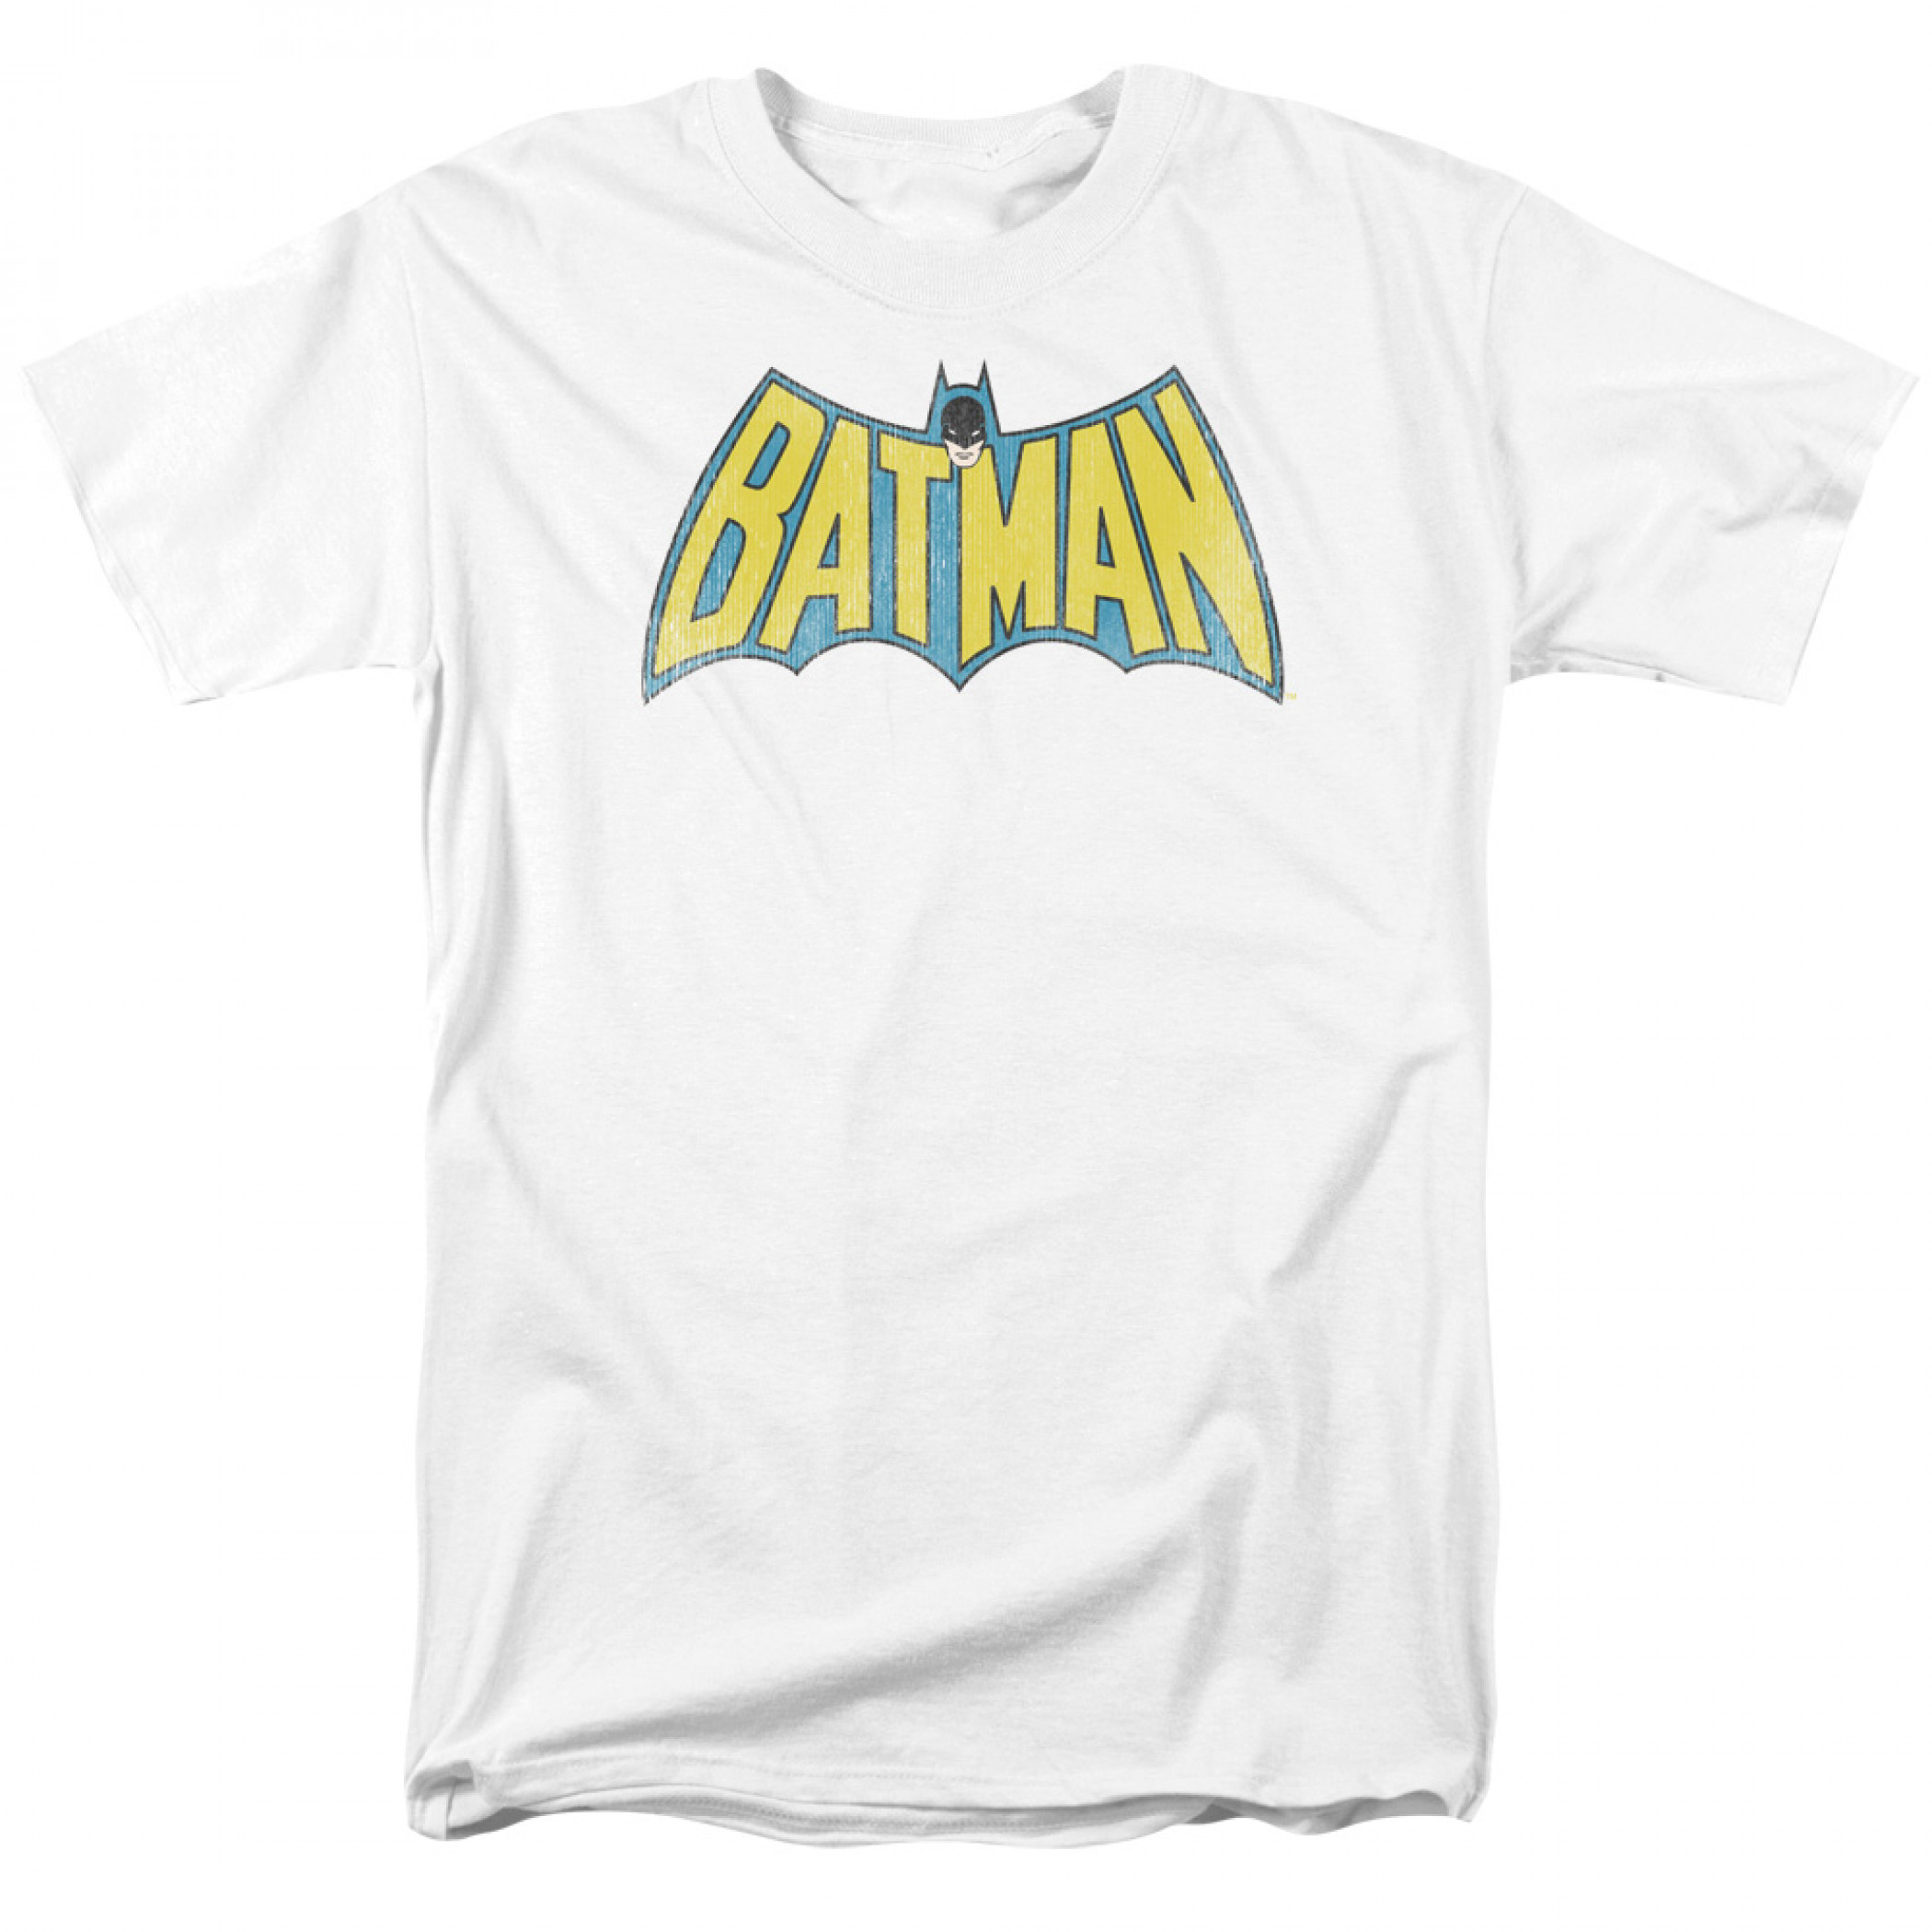 Batman Vintage Logo White T-Shirt